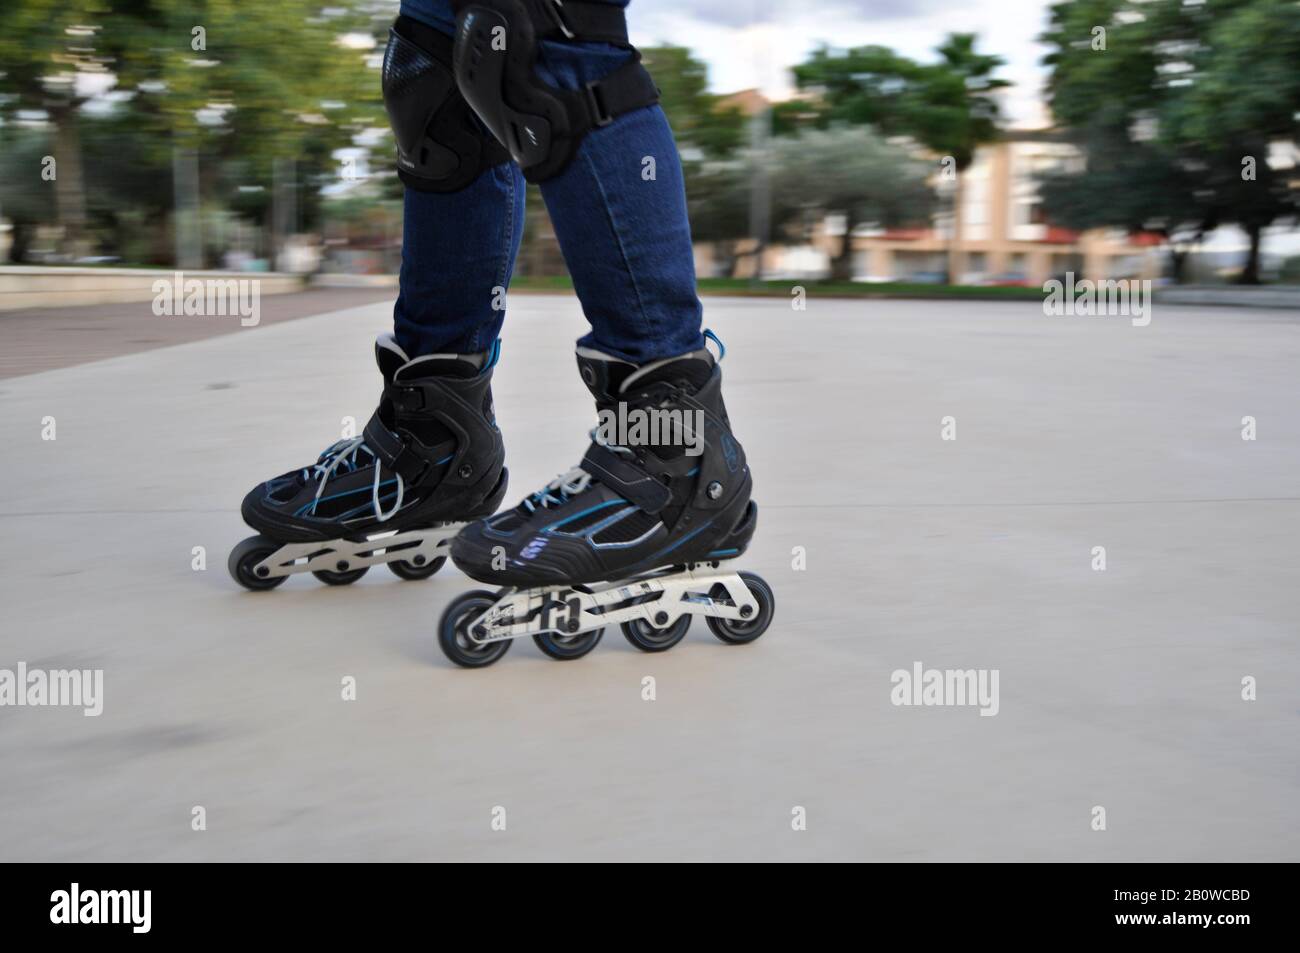 Beine des Mannes, der schwarze Inline-Skates auf einer Eislaufbahn im Freien trägt Stockfoto